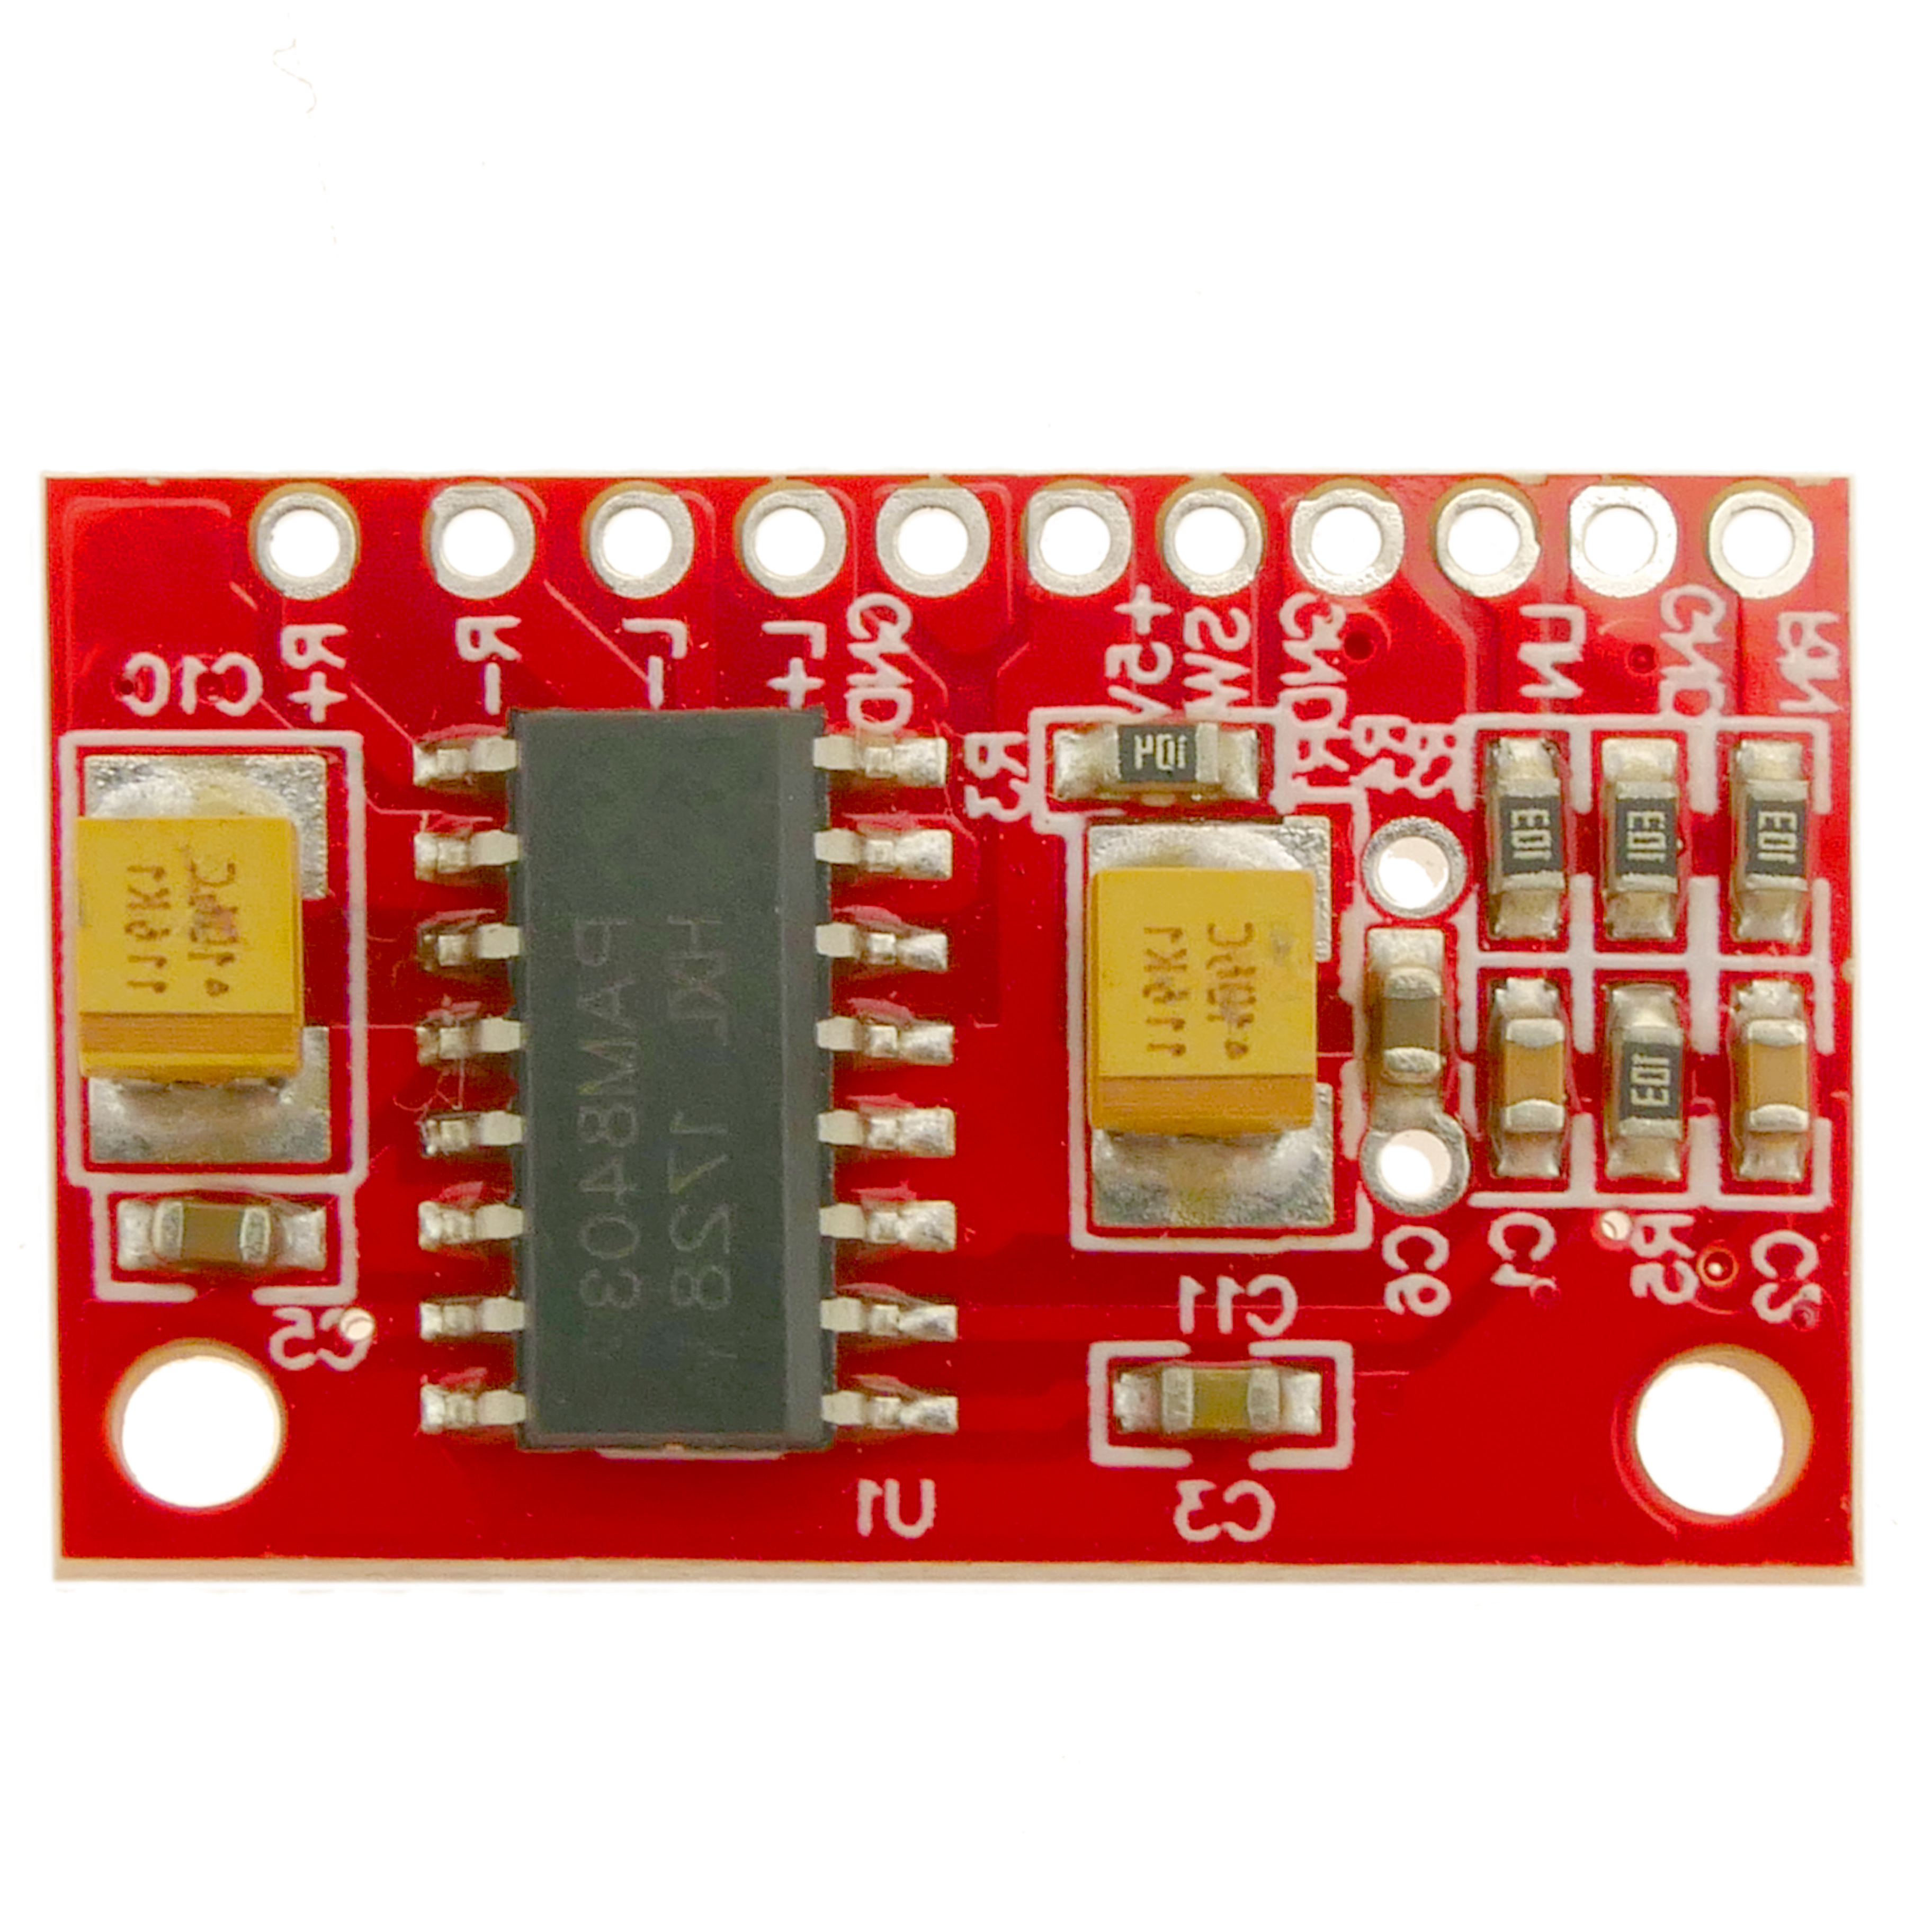 Amplificador de potencia de 5V, USB, 3W+3W DC AMP. Modelo DW-0233